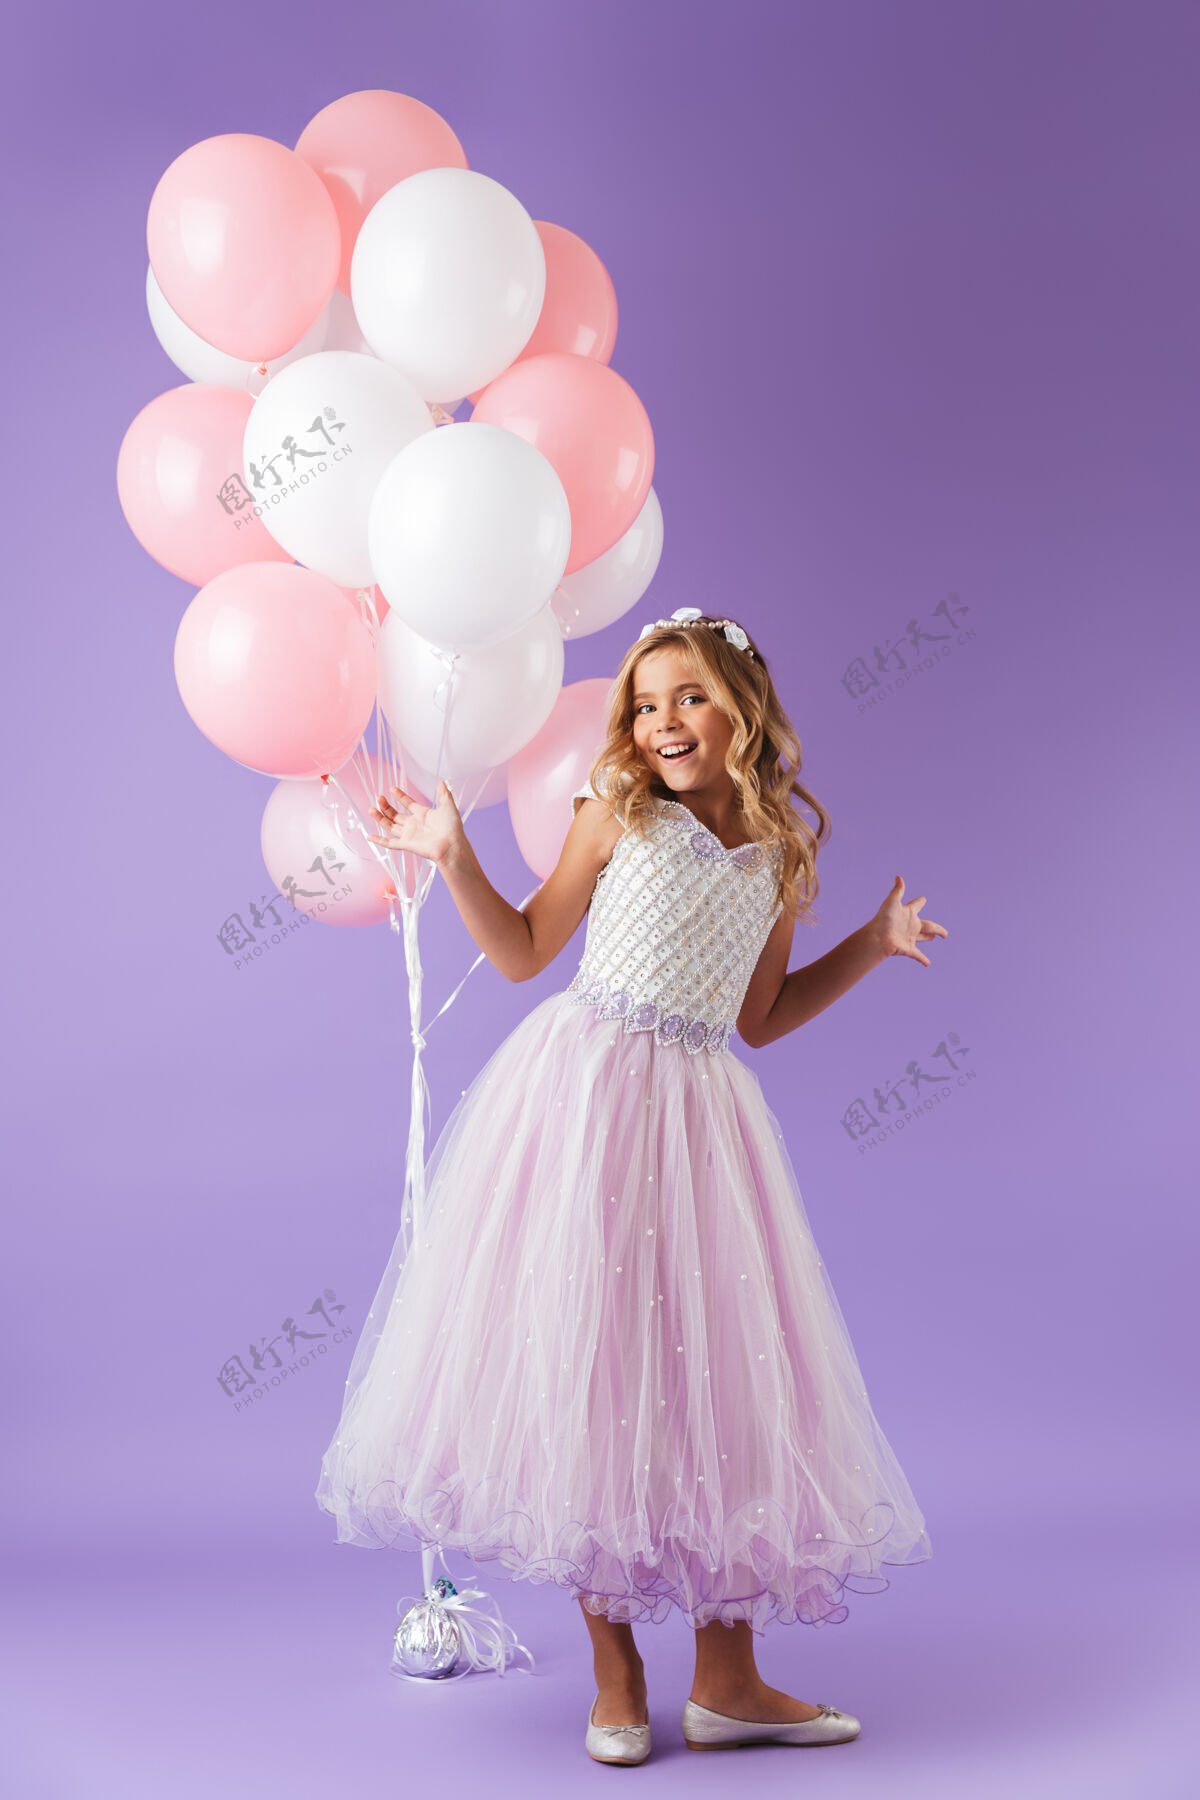 小一个穿着公主裙的漂亮小女孩孤零零地站在紫罗兰色的墙上 手里拿着一堆气球束庆祝连衣裙